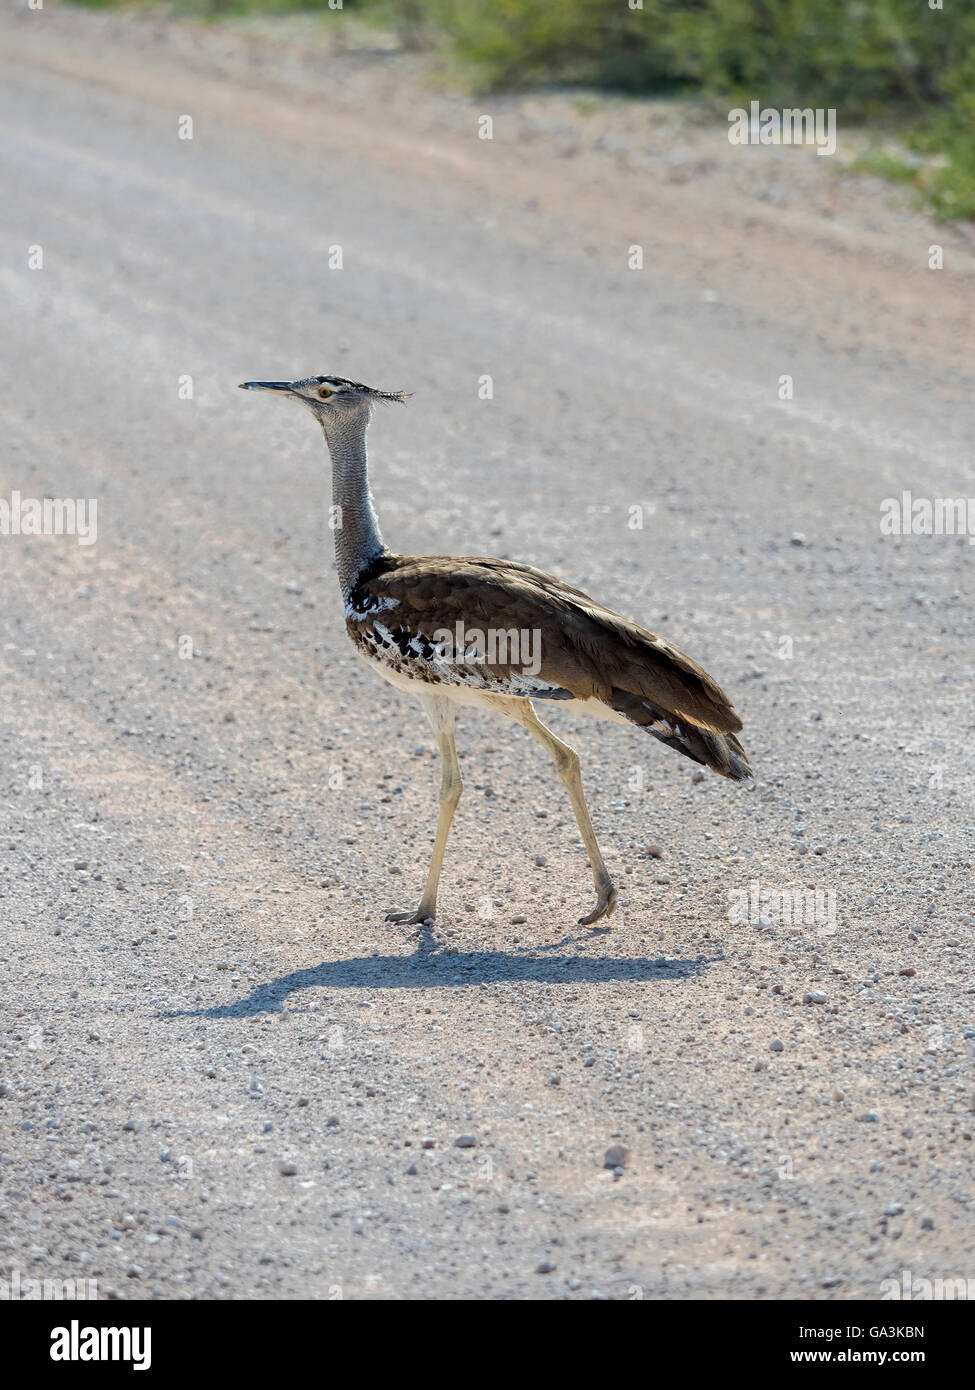 Kori bustard (Ardeotis kori) walking on gravel road, Okaukuejo, Etosha National Park, Region Outjo, Namibia Stock Photo